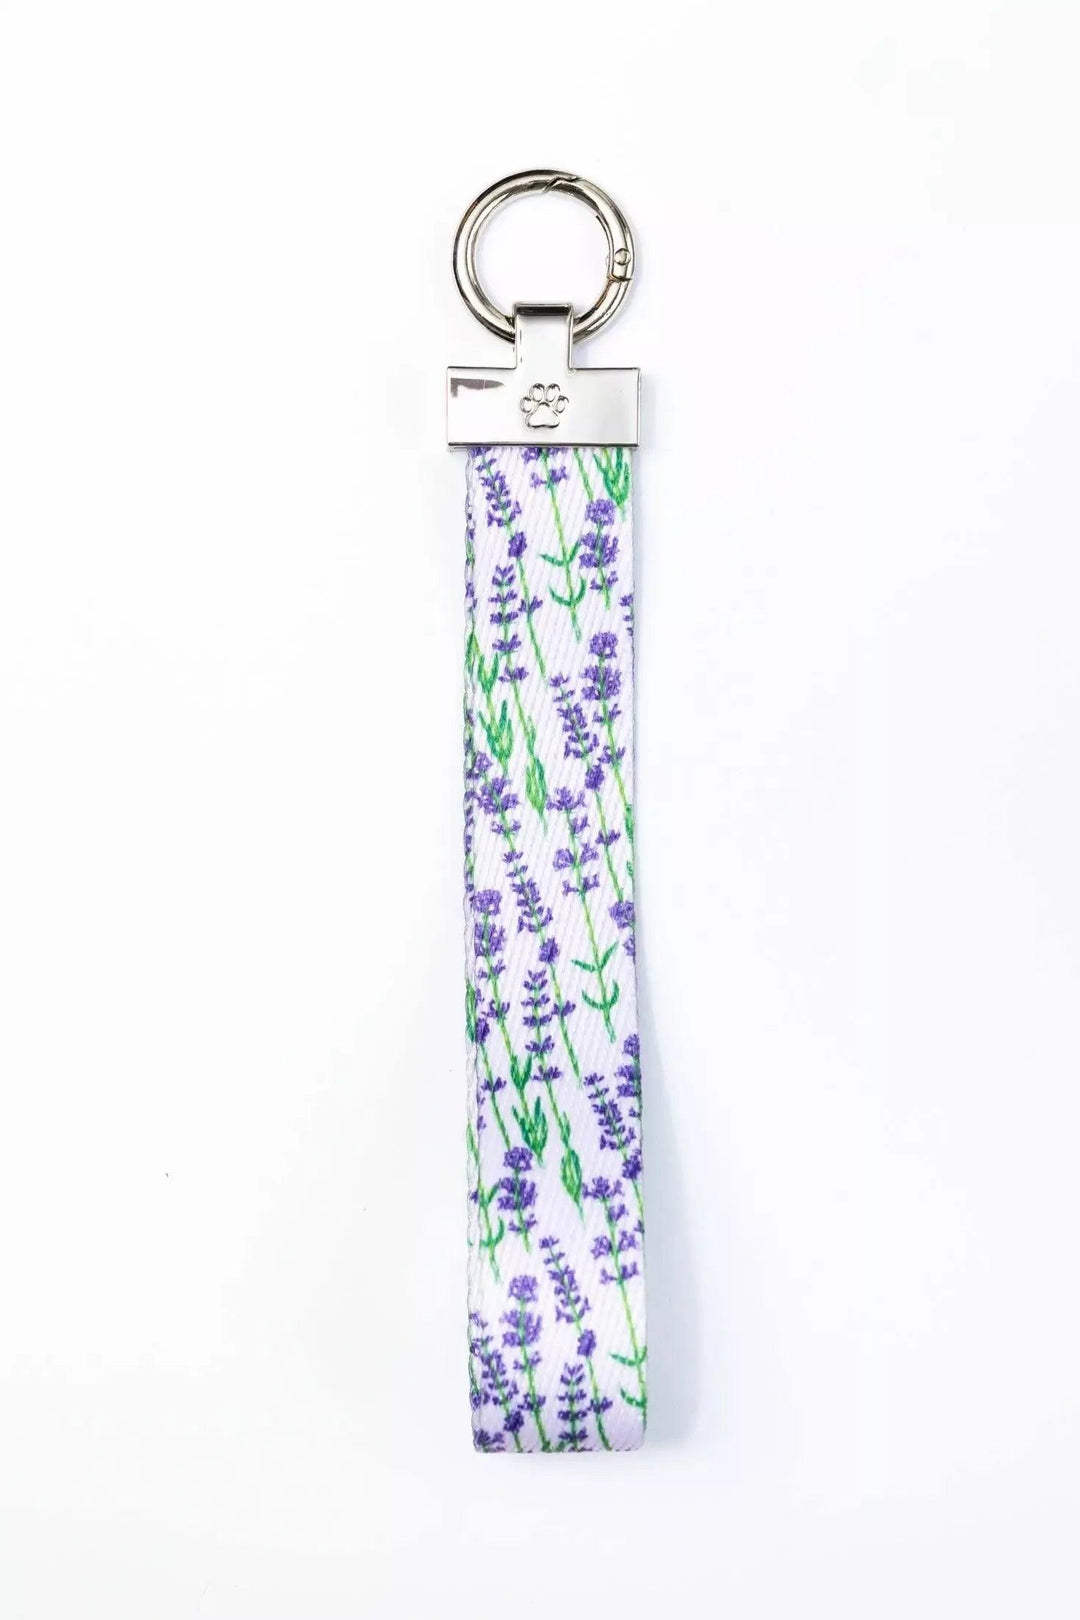 Lavender Blooms Wristlet Keychain keychain